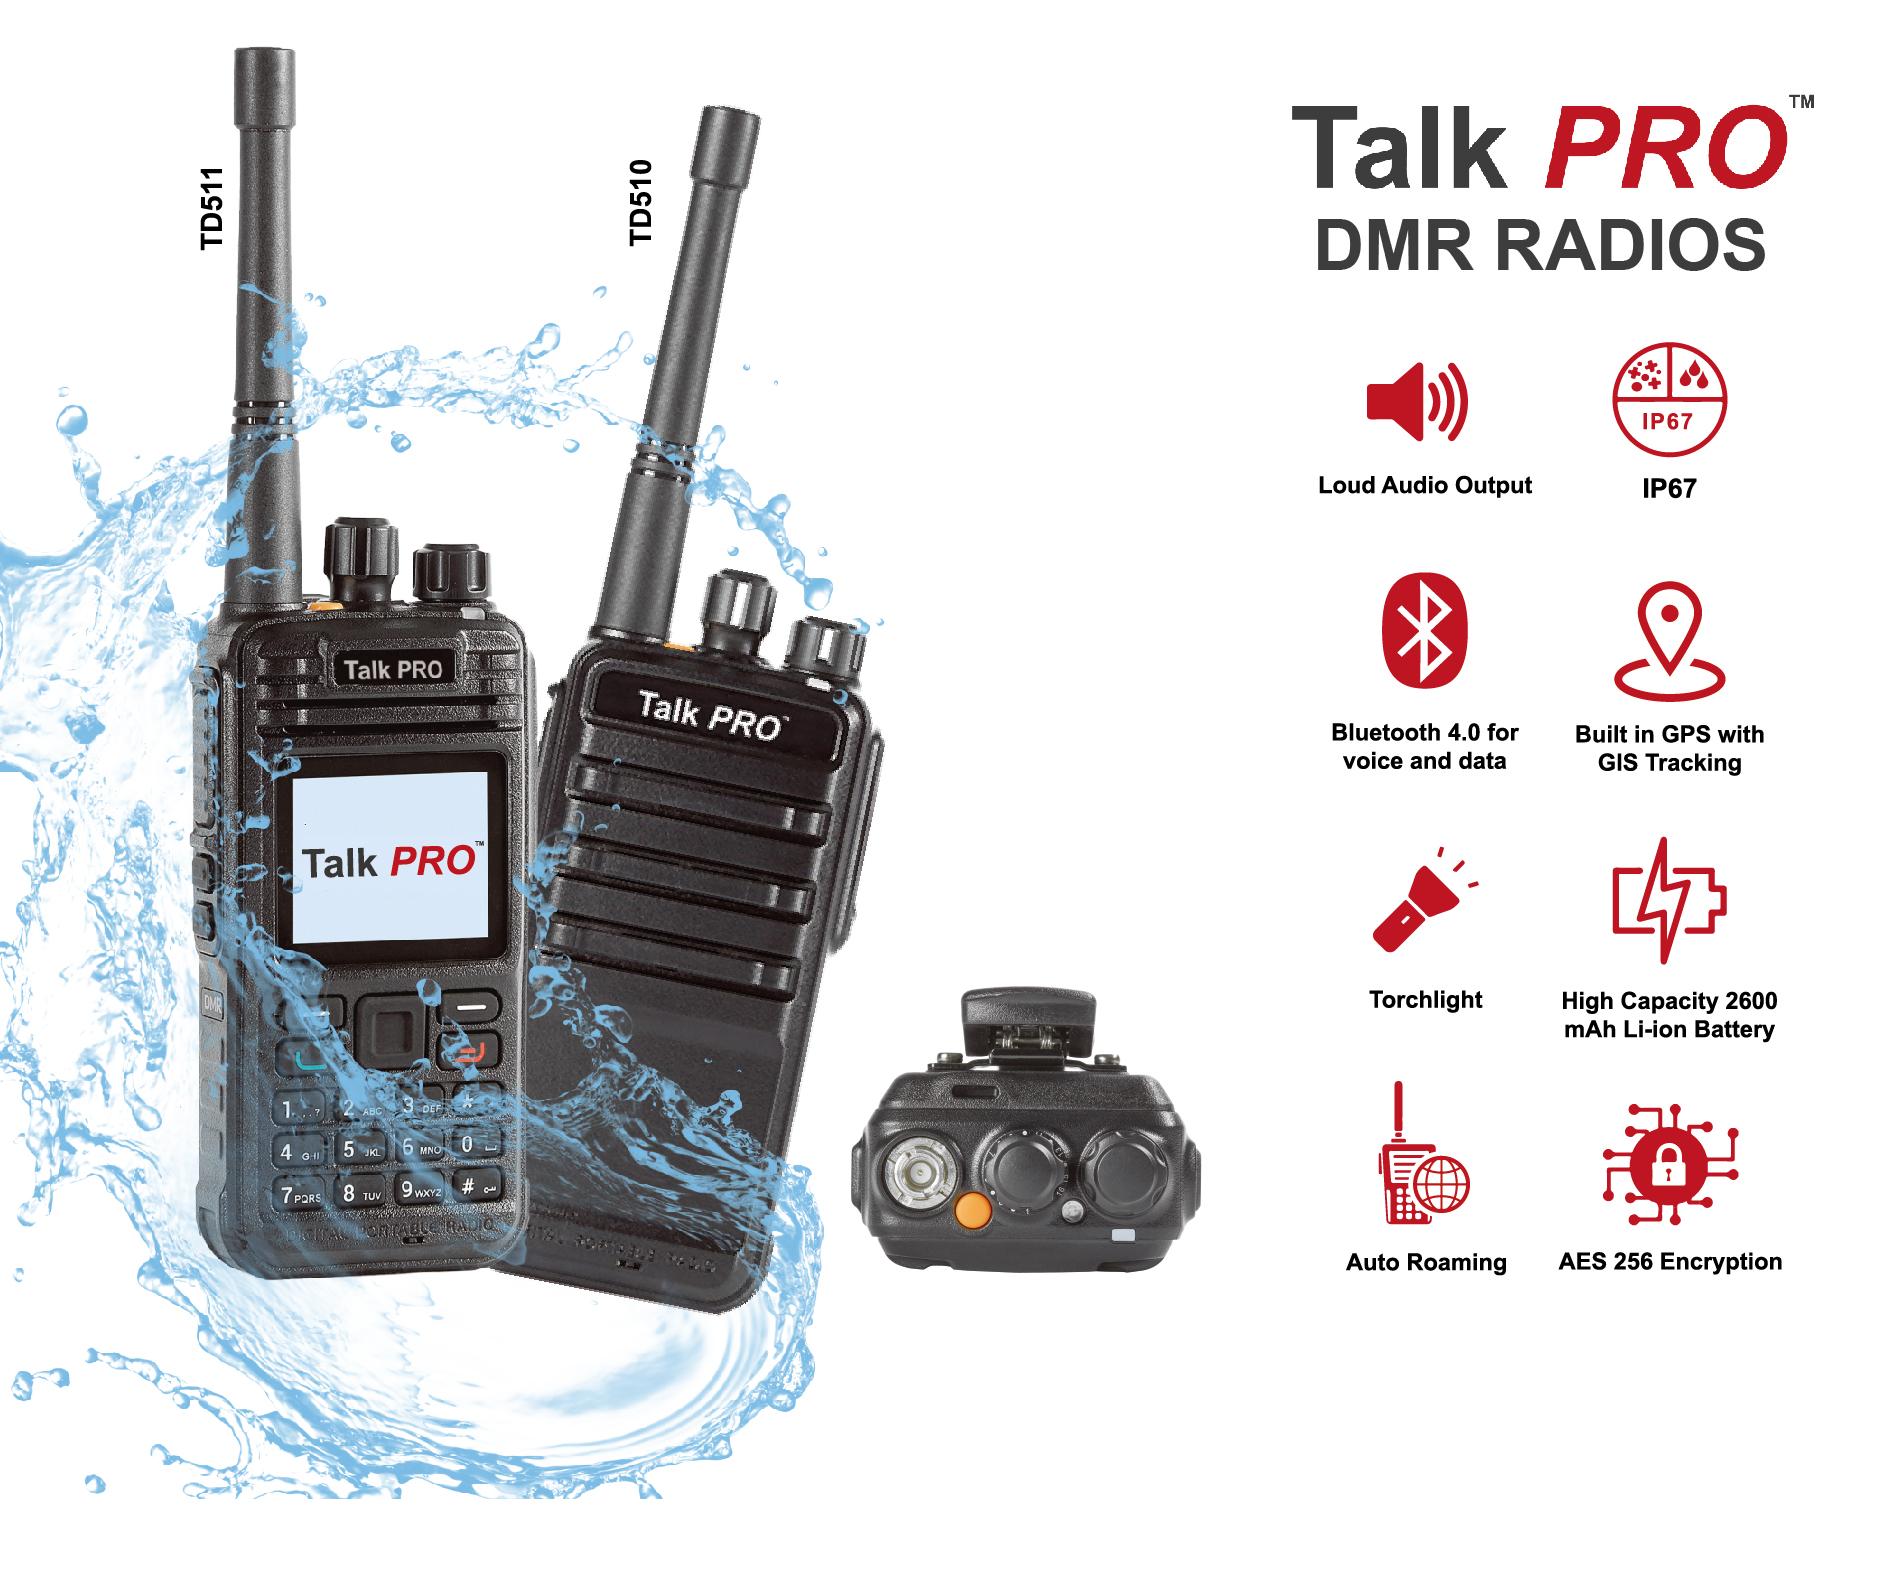 talkpro DMR Radios